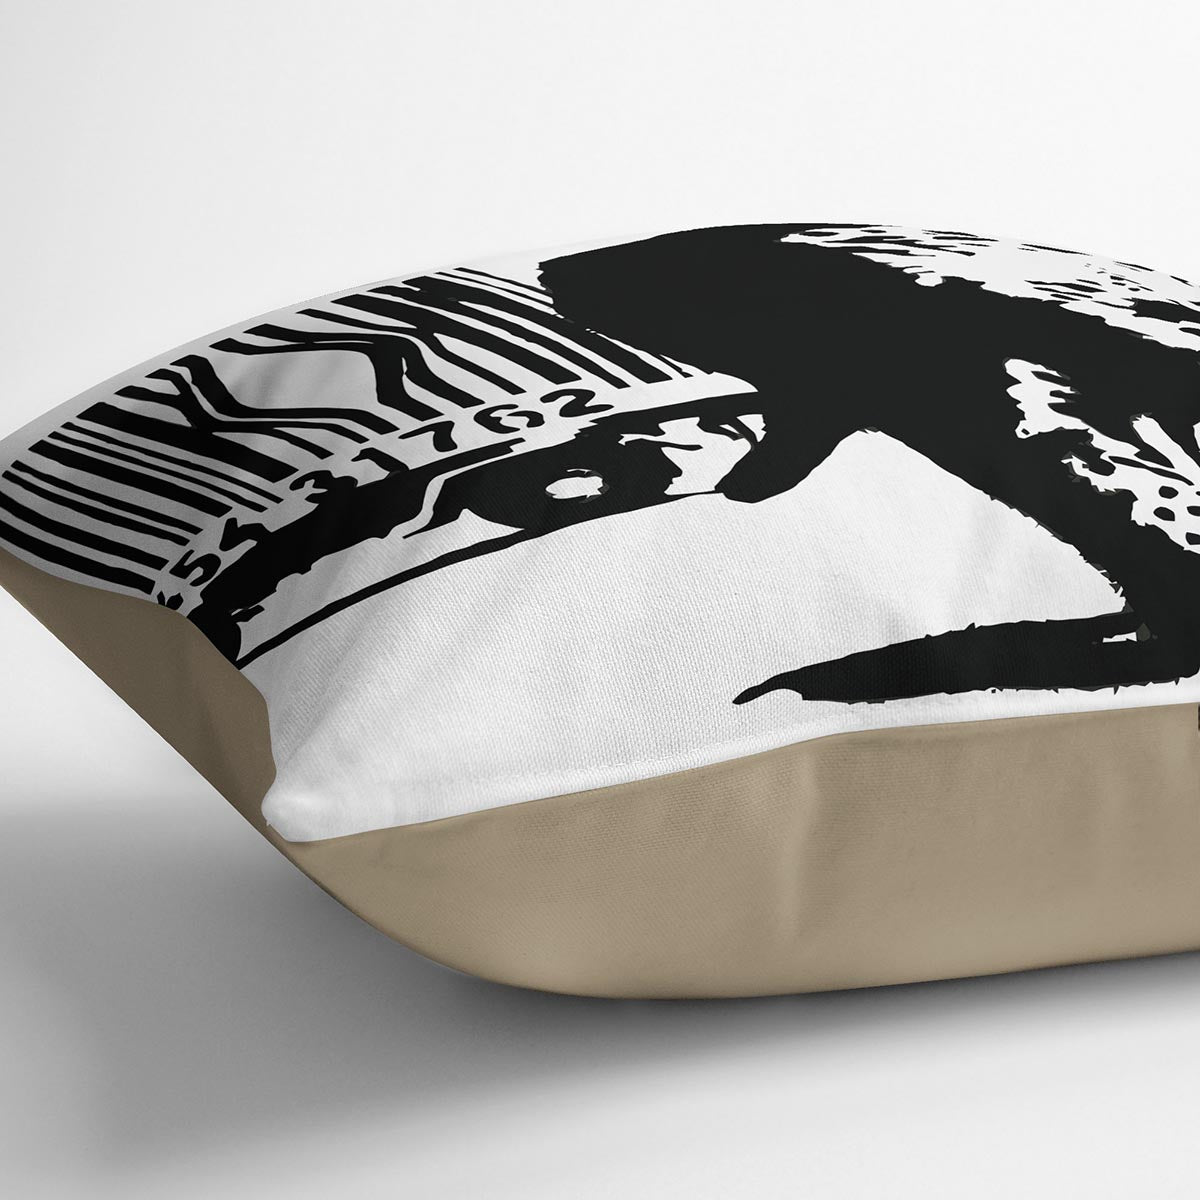 Banksy Barcode Leopard Cushion